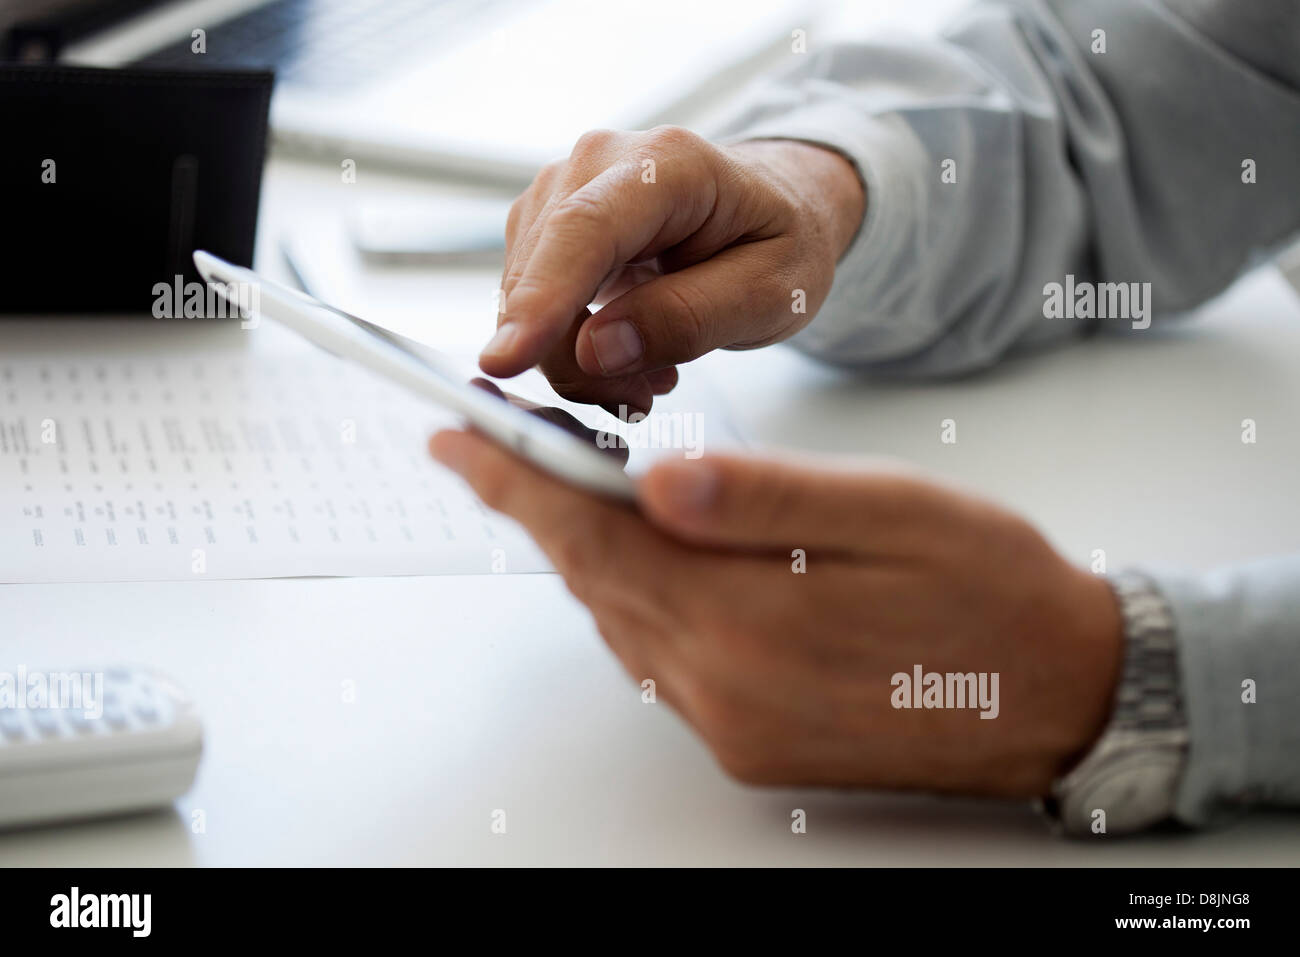 Mann mit Touch-Screen auf digital-Tablette, beschnitten Stockfoto